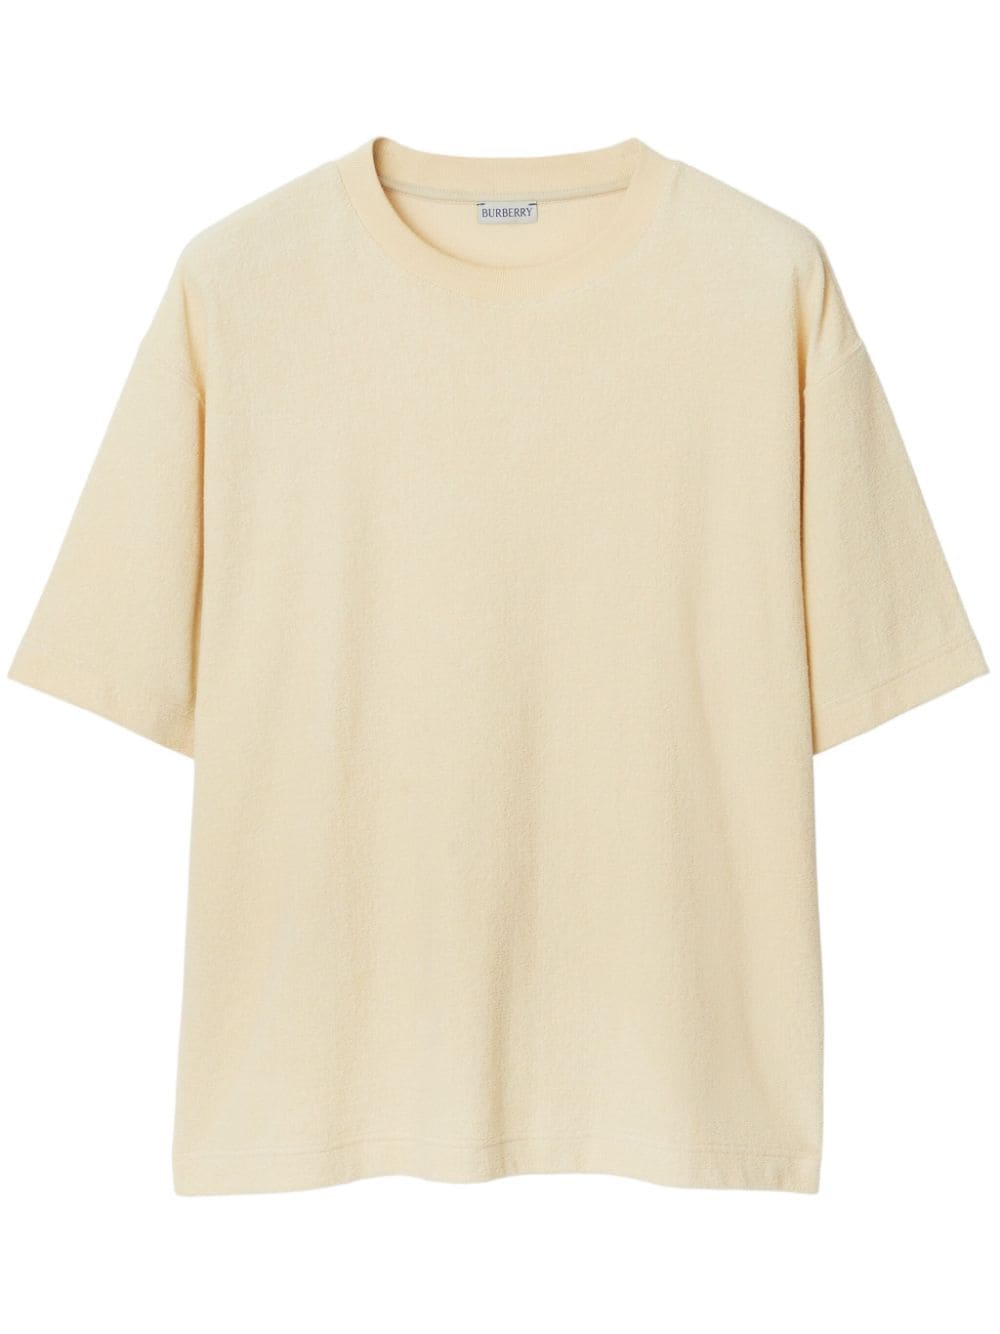 Burberry round-neck cotton T-shirt - Neutrals von Burberry